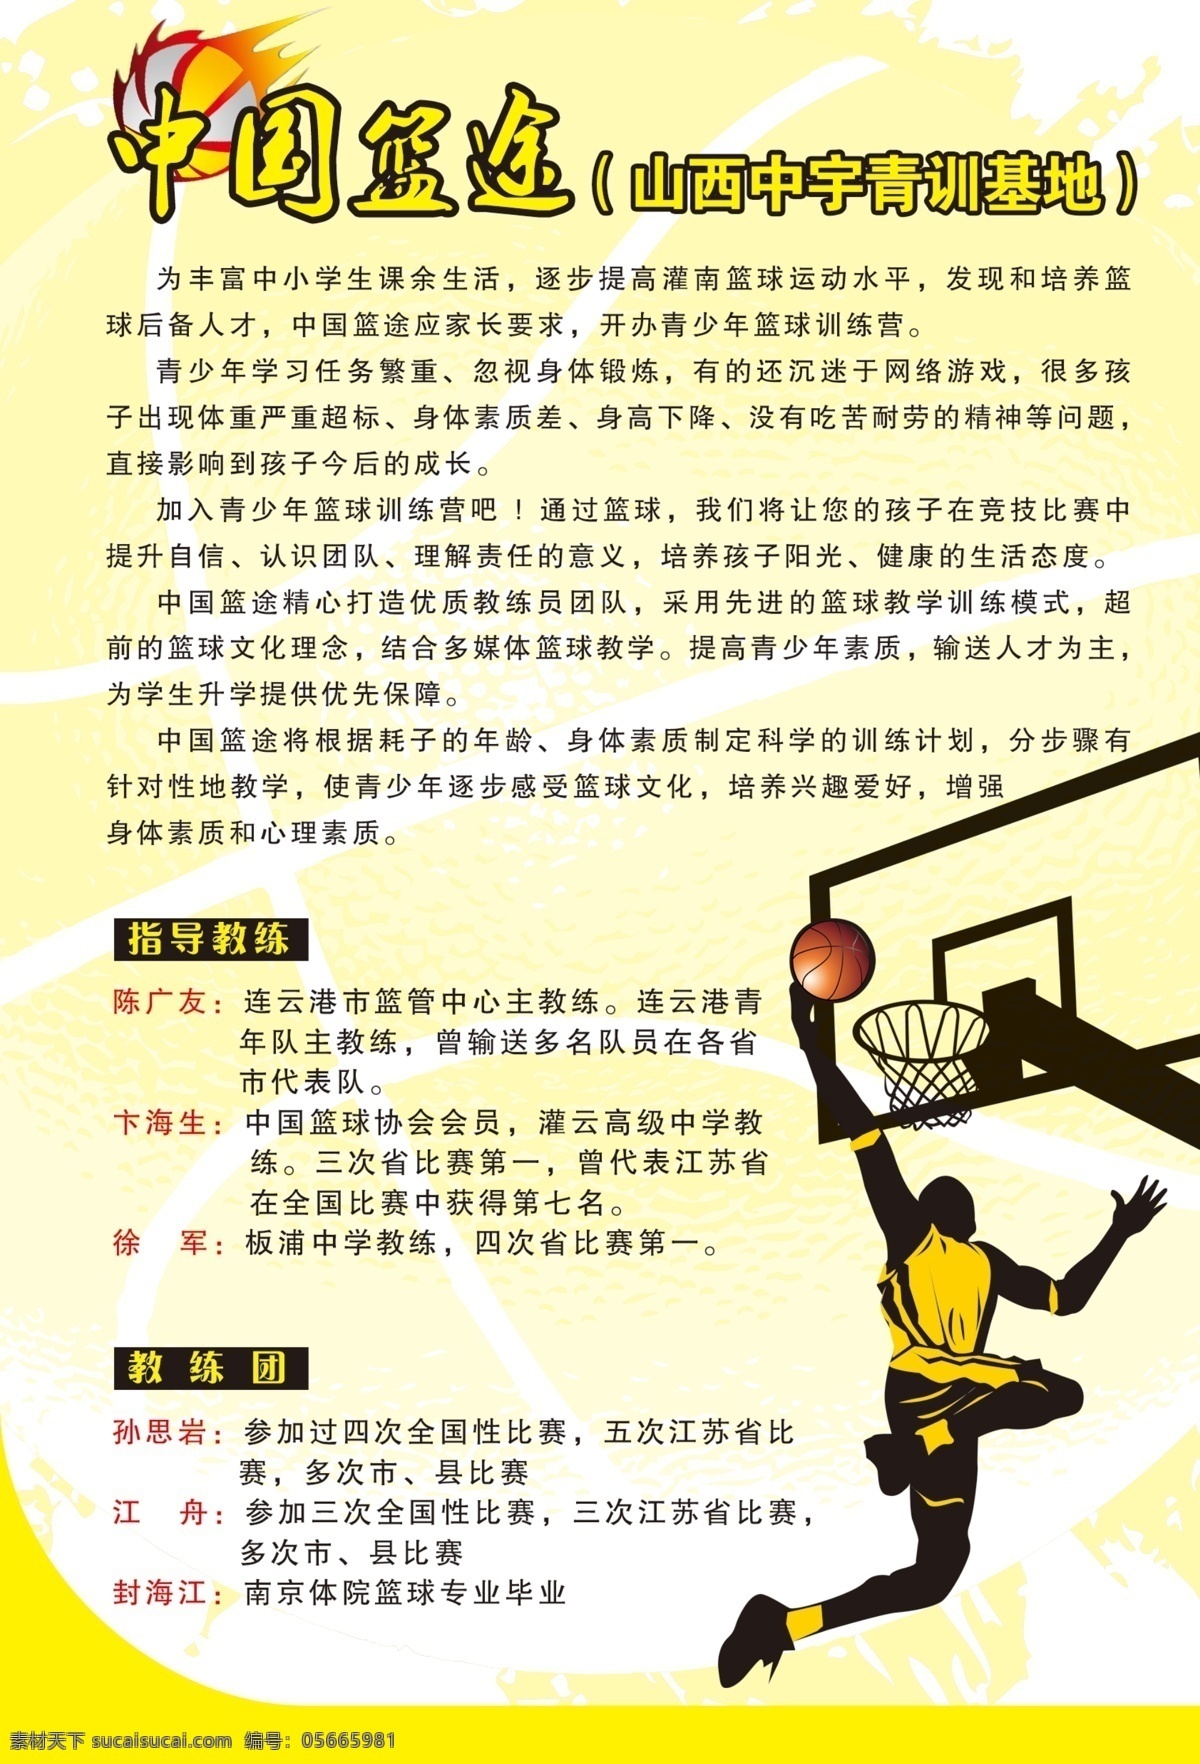 广告设计模板 剪影 篮球 球 投篮 影子 源文件 中国 篮 途 模板下载 中国篮途 psd源文件